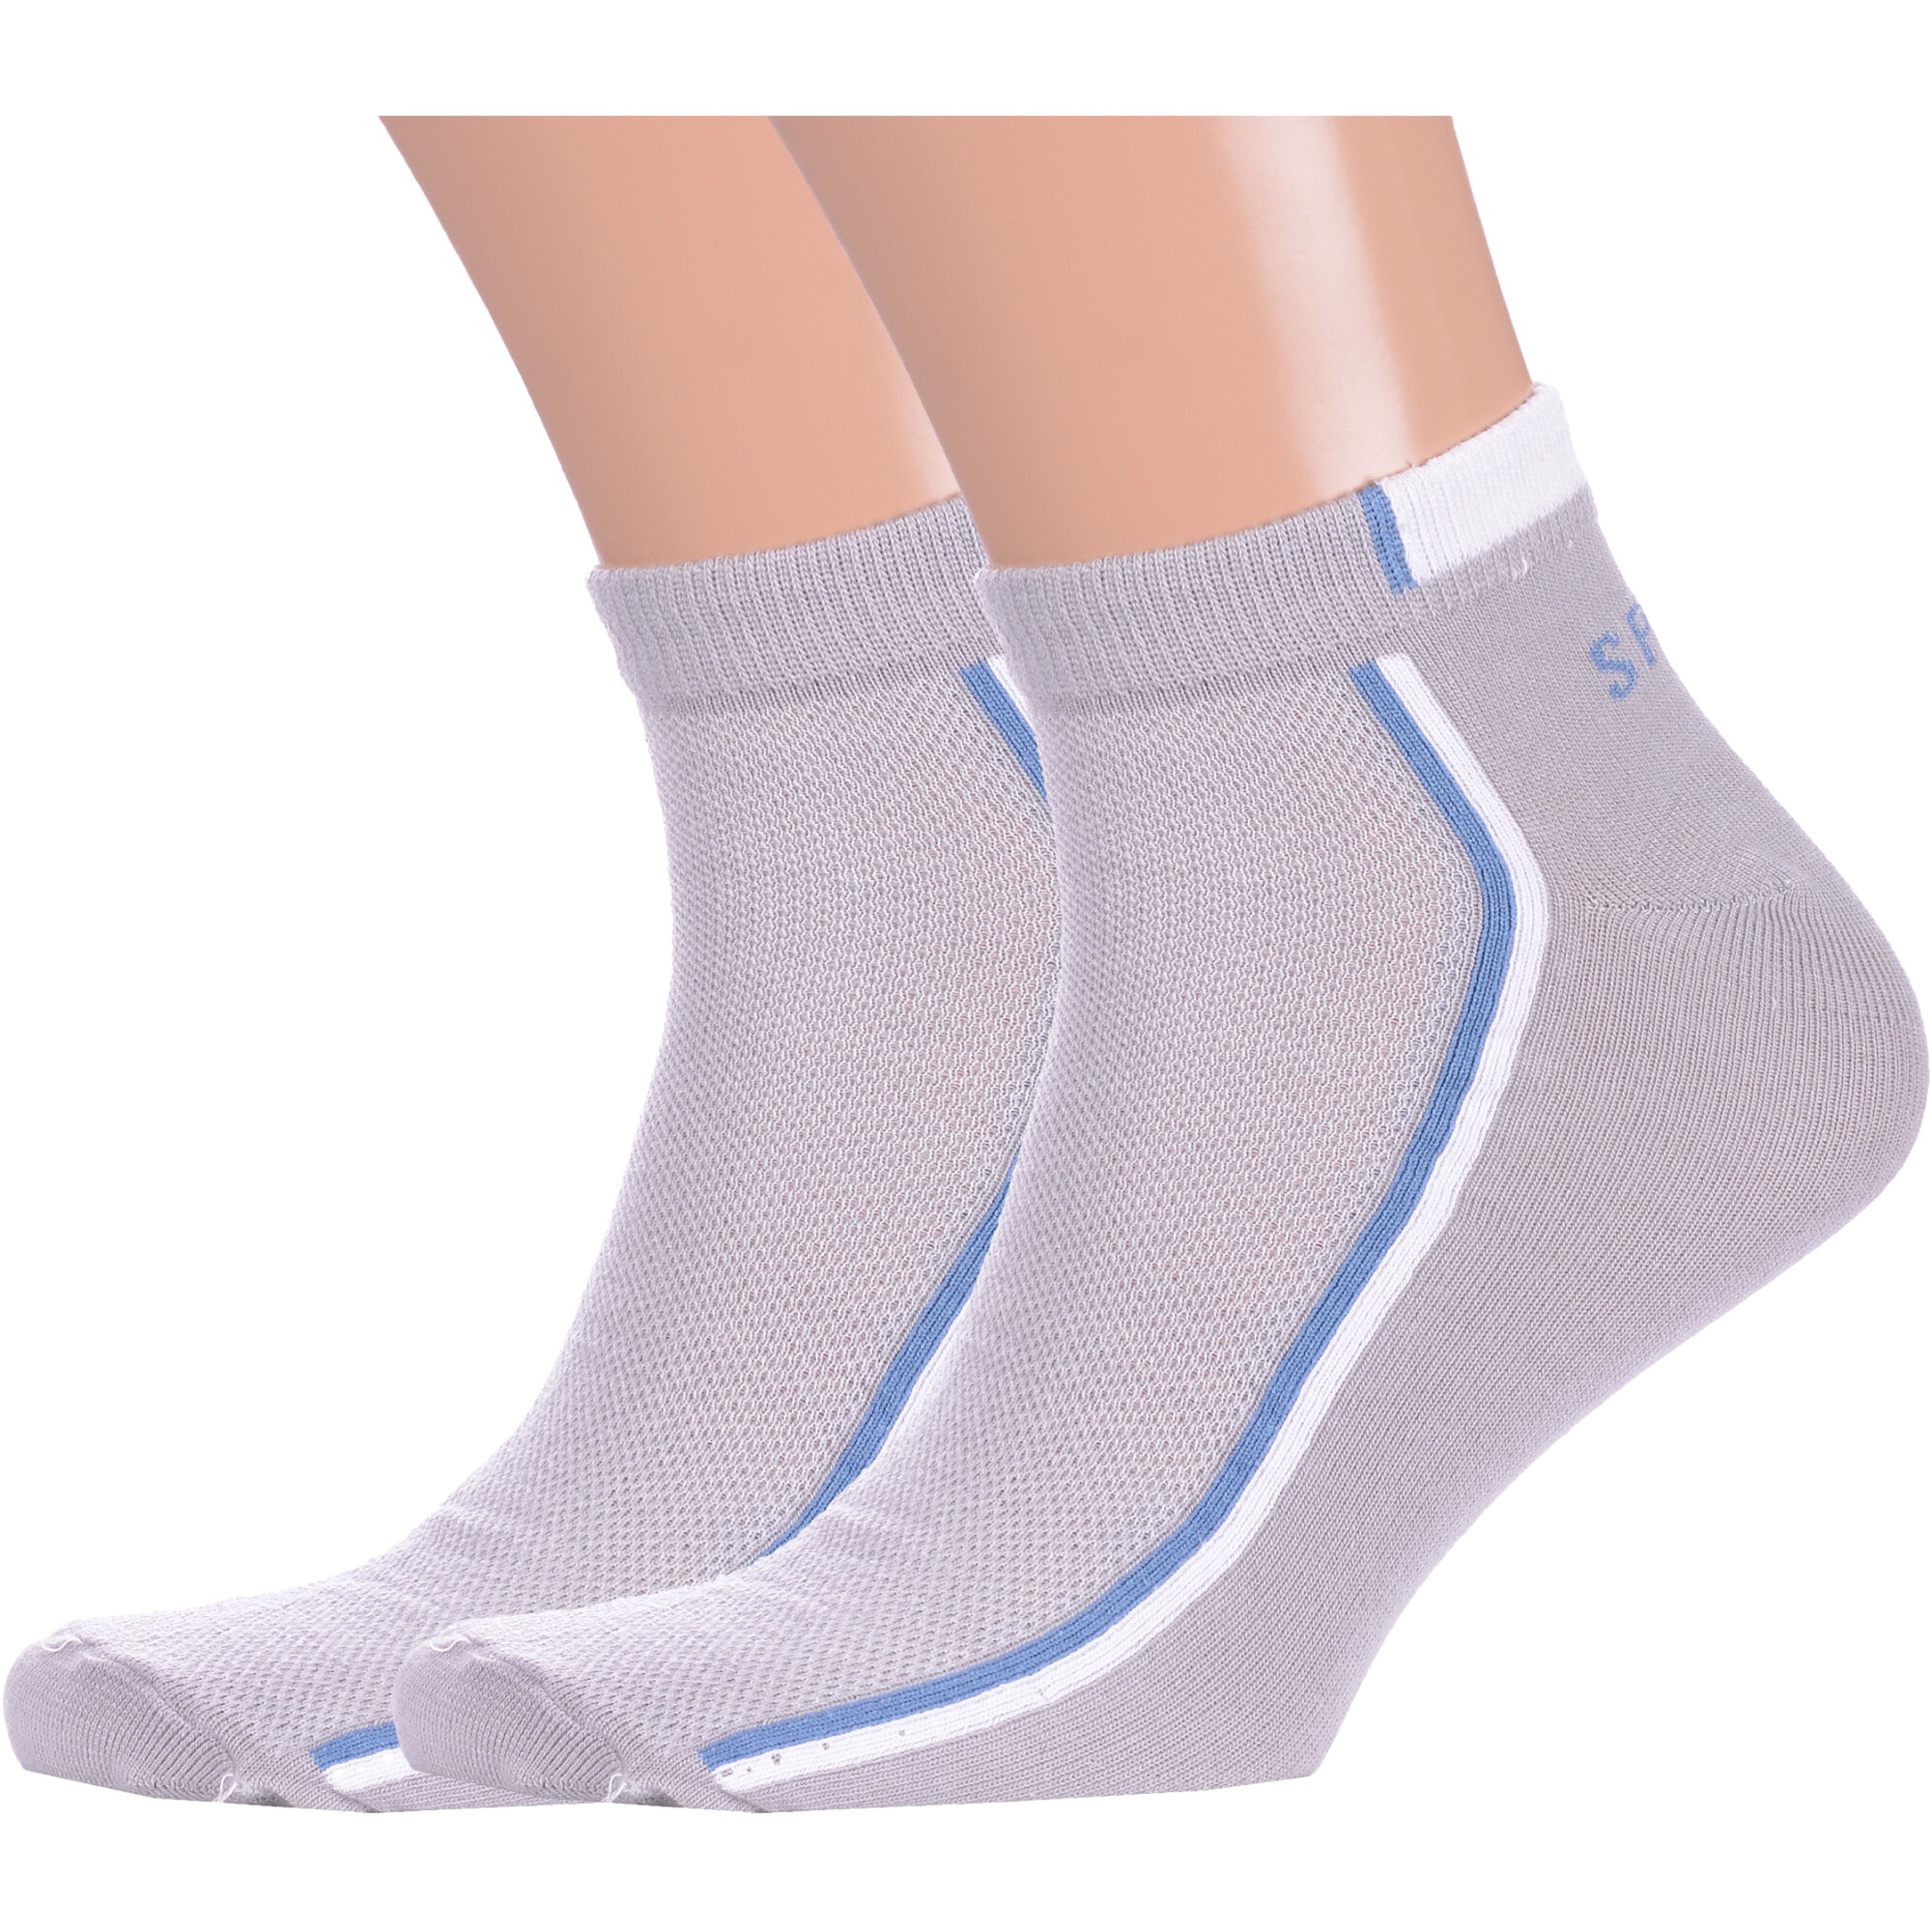 Комплект из 2 пар мужских спортивных носков VASILINA СЕРЫЕ с голубой  полосой 2-2С3501 купите в «НосМаг»